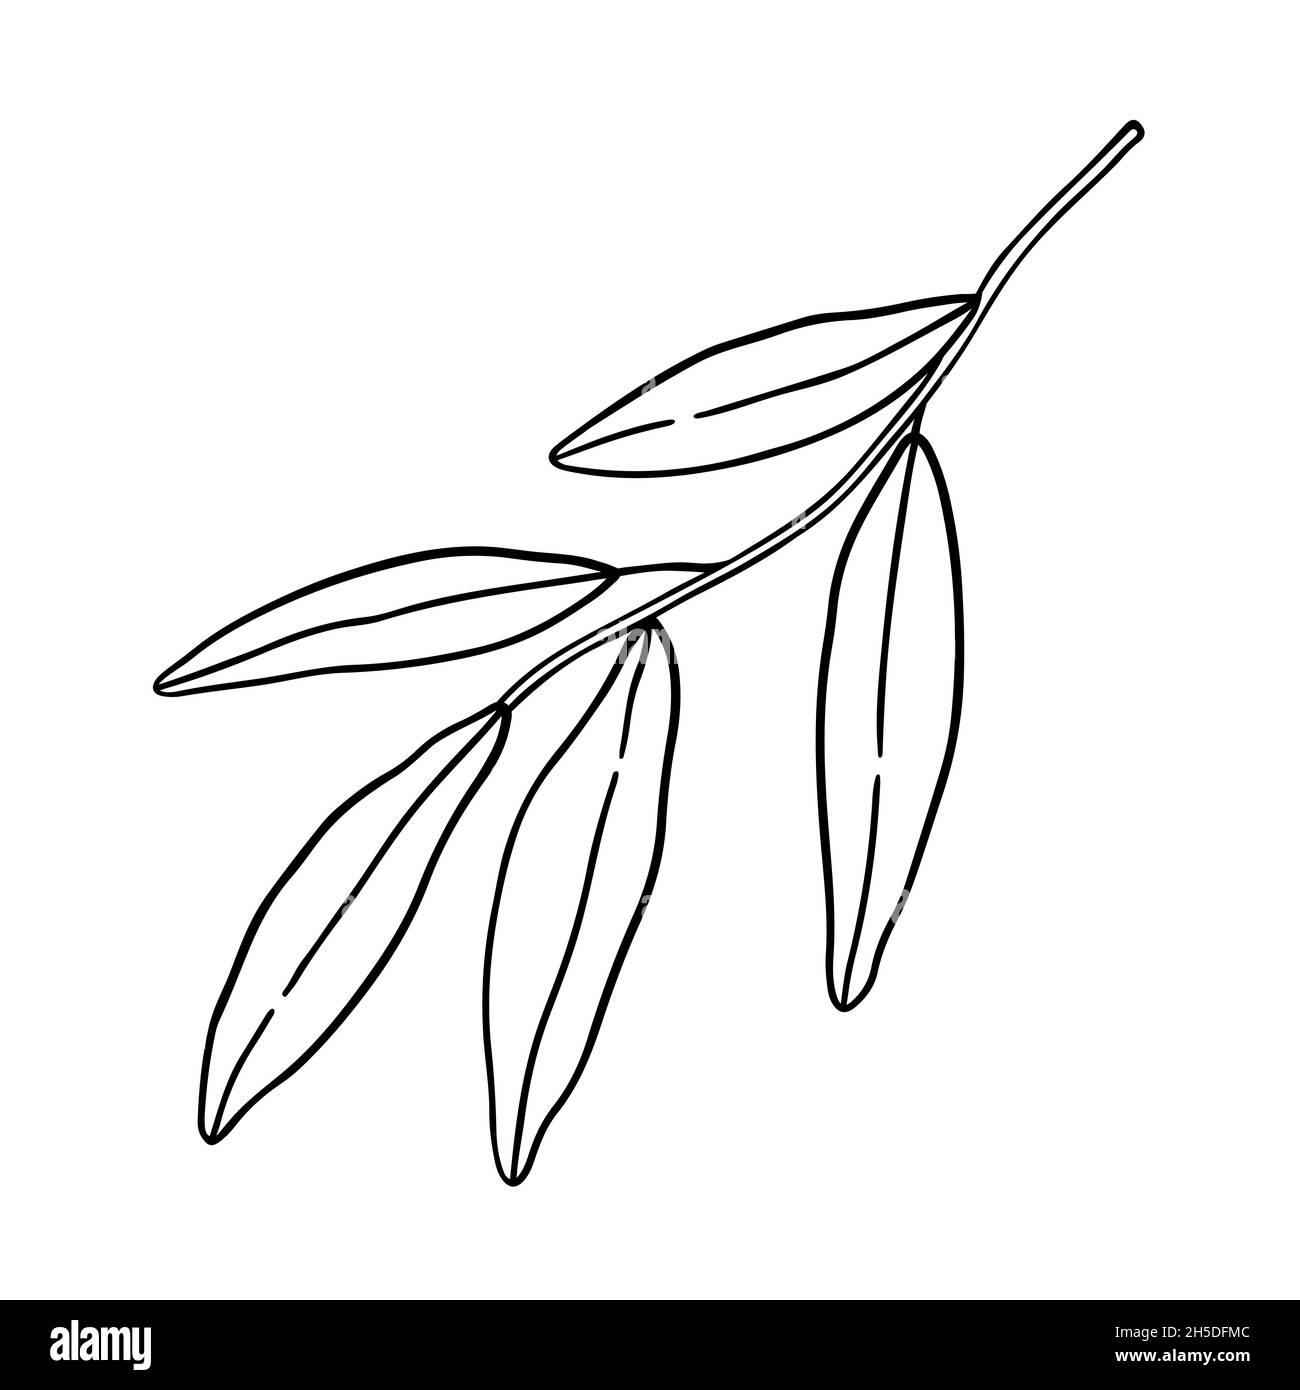 Ramoscello astratto con foglie isolate su sfondo bianco. Illustrazione disegnata a mano vettoriale in stile contorno. Perfetto per carte, logo, decorazioni Illustrazione Vettoriale